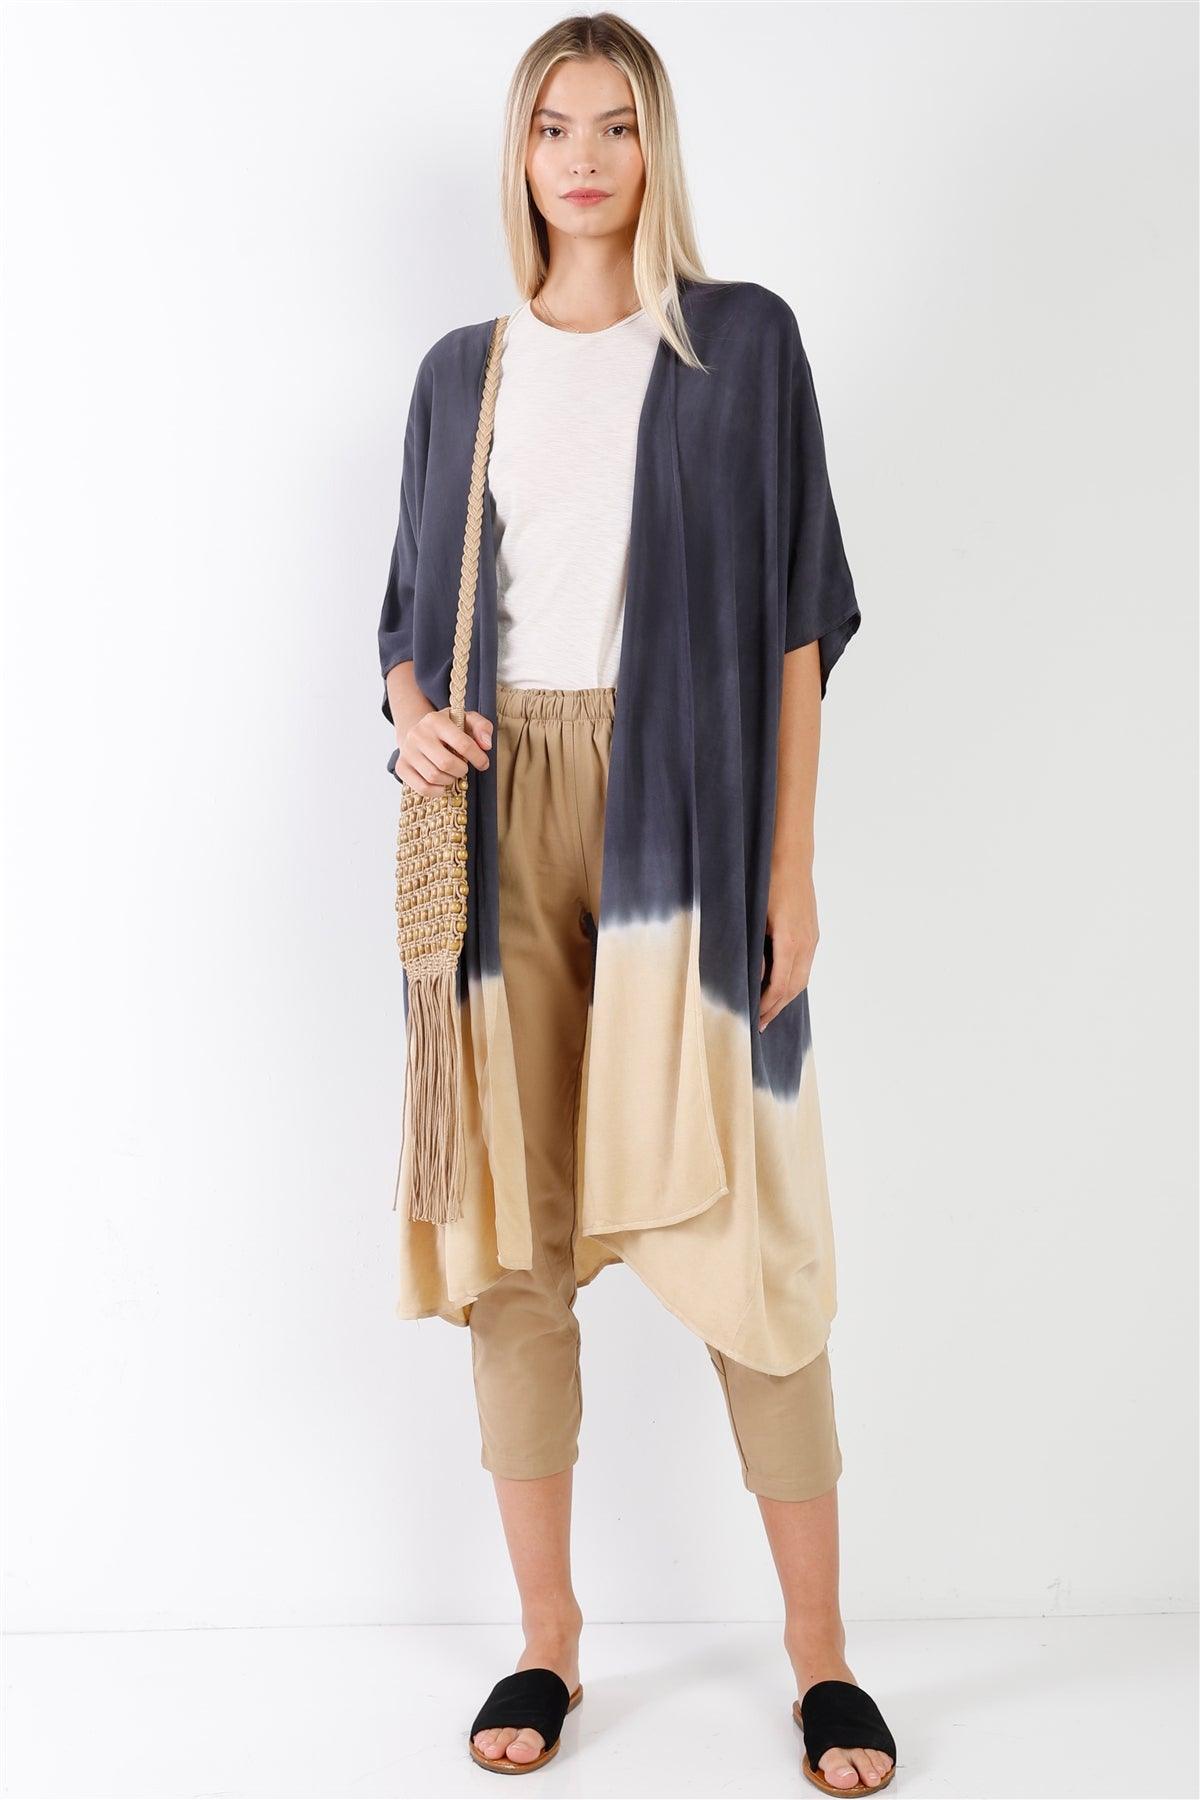 Navy & Cream Tie-Dye Gradient Open Front Oversized Midi Kimono/Cover Up